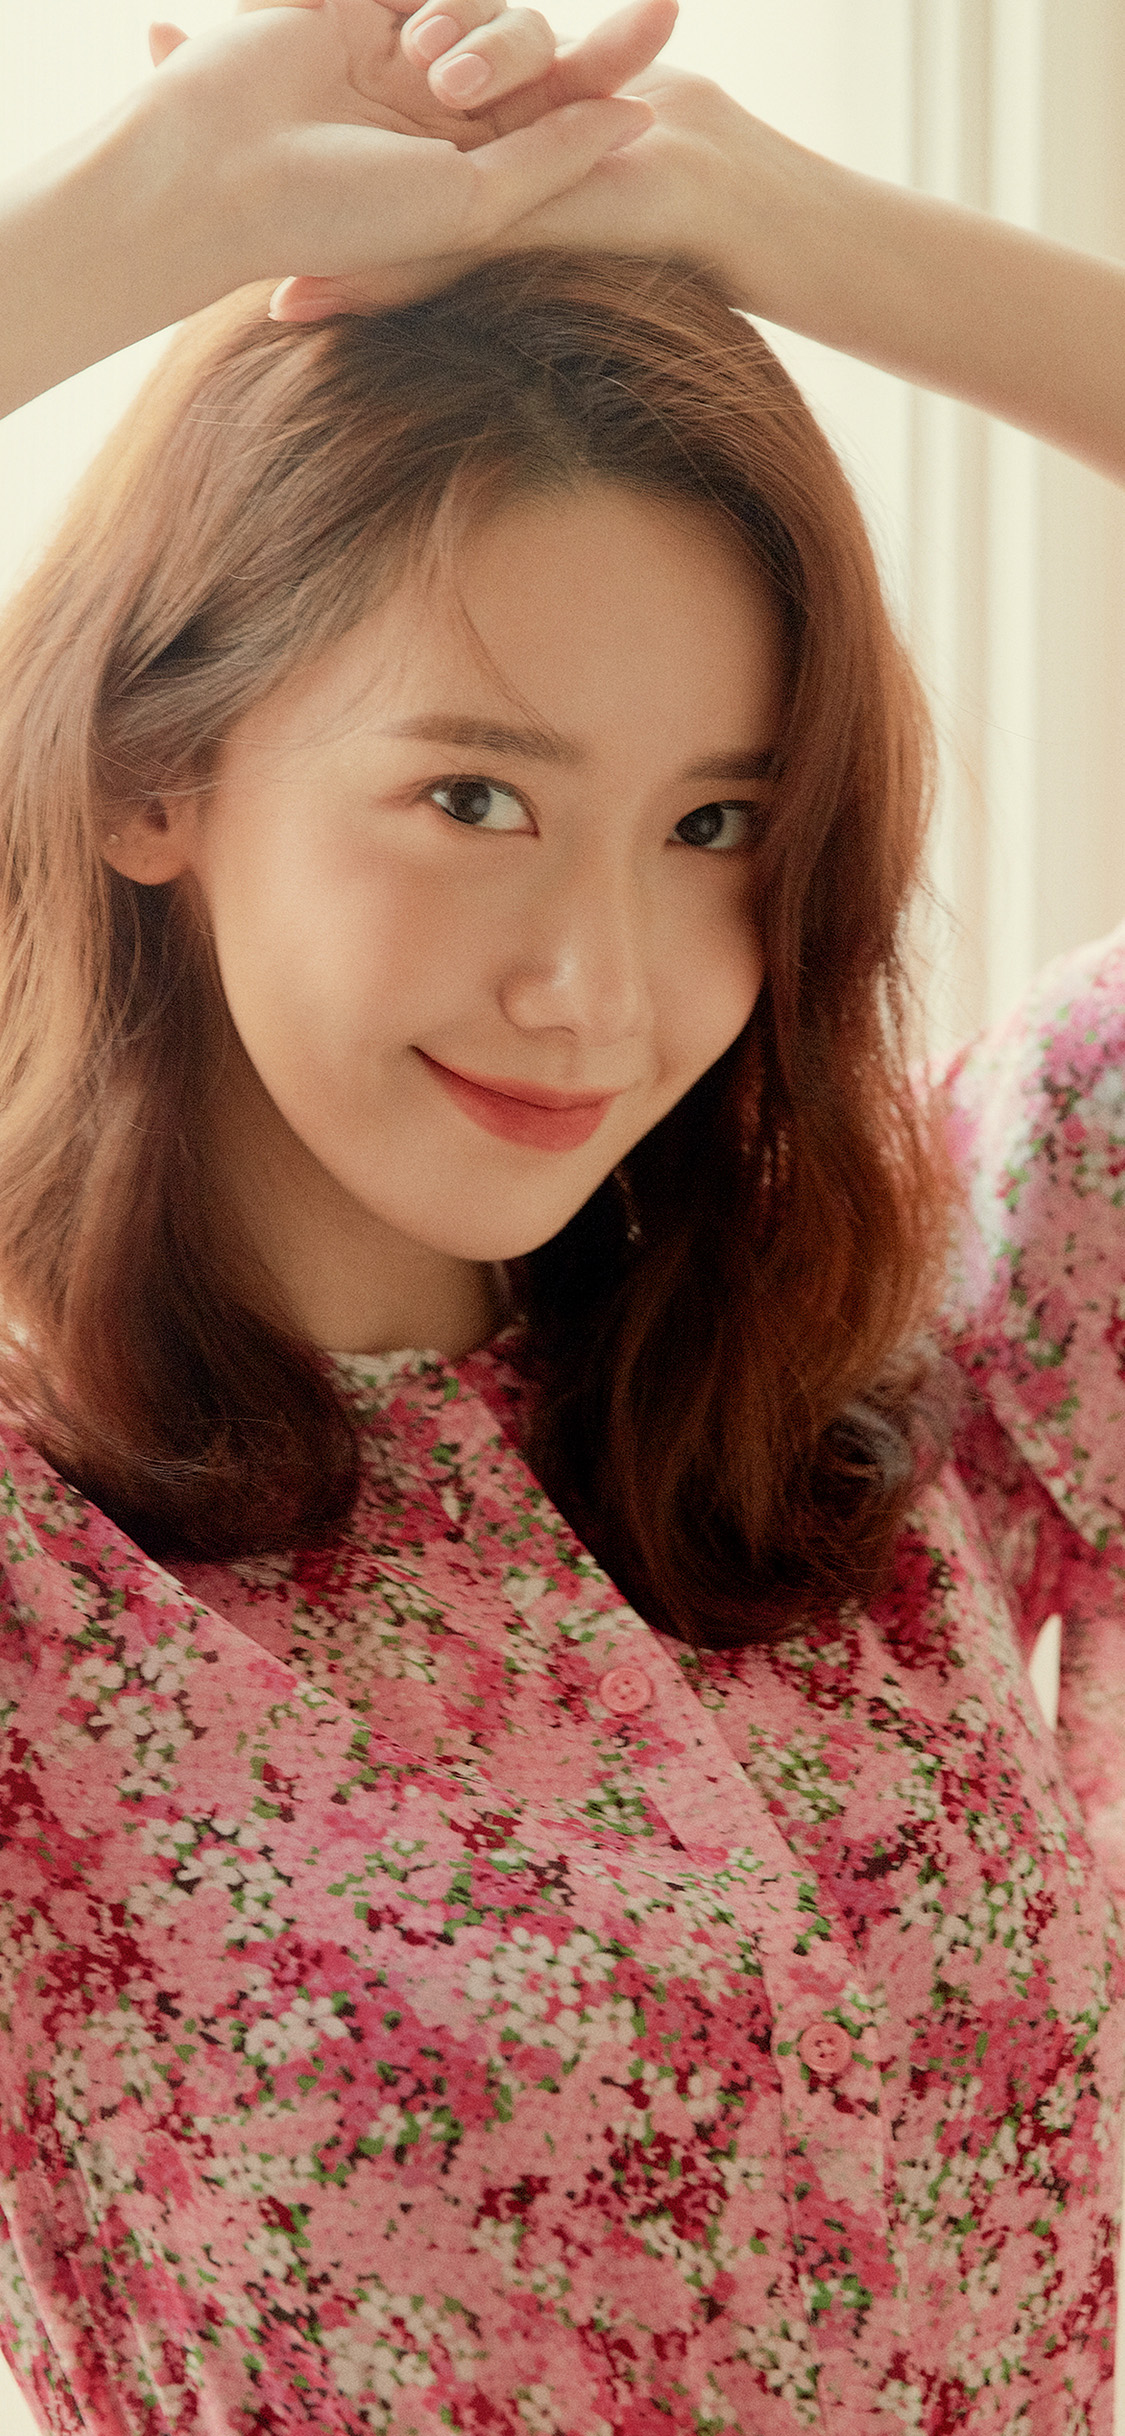 穿粉红花衬衫的韩国明星林允儿手机壁纸